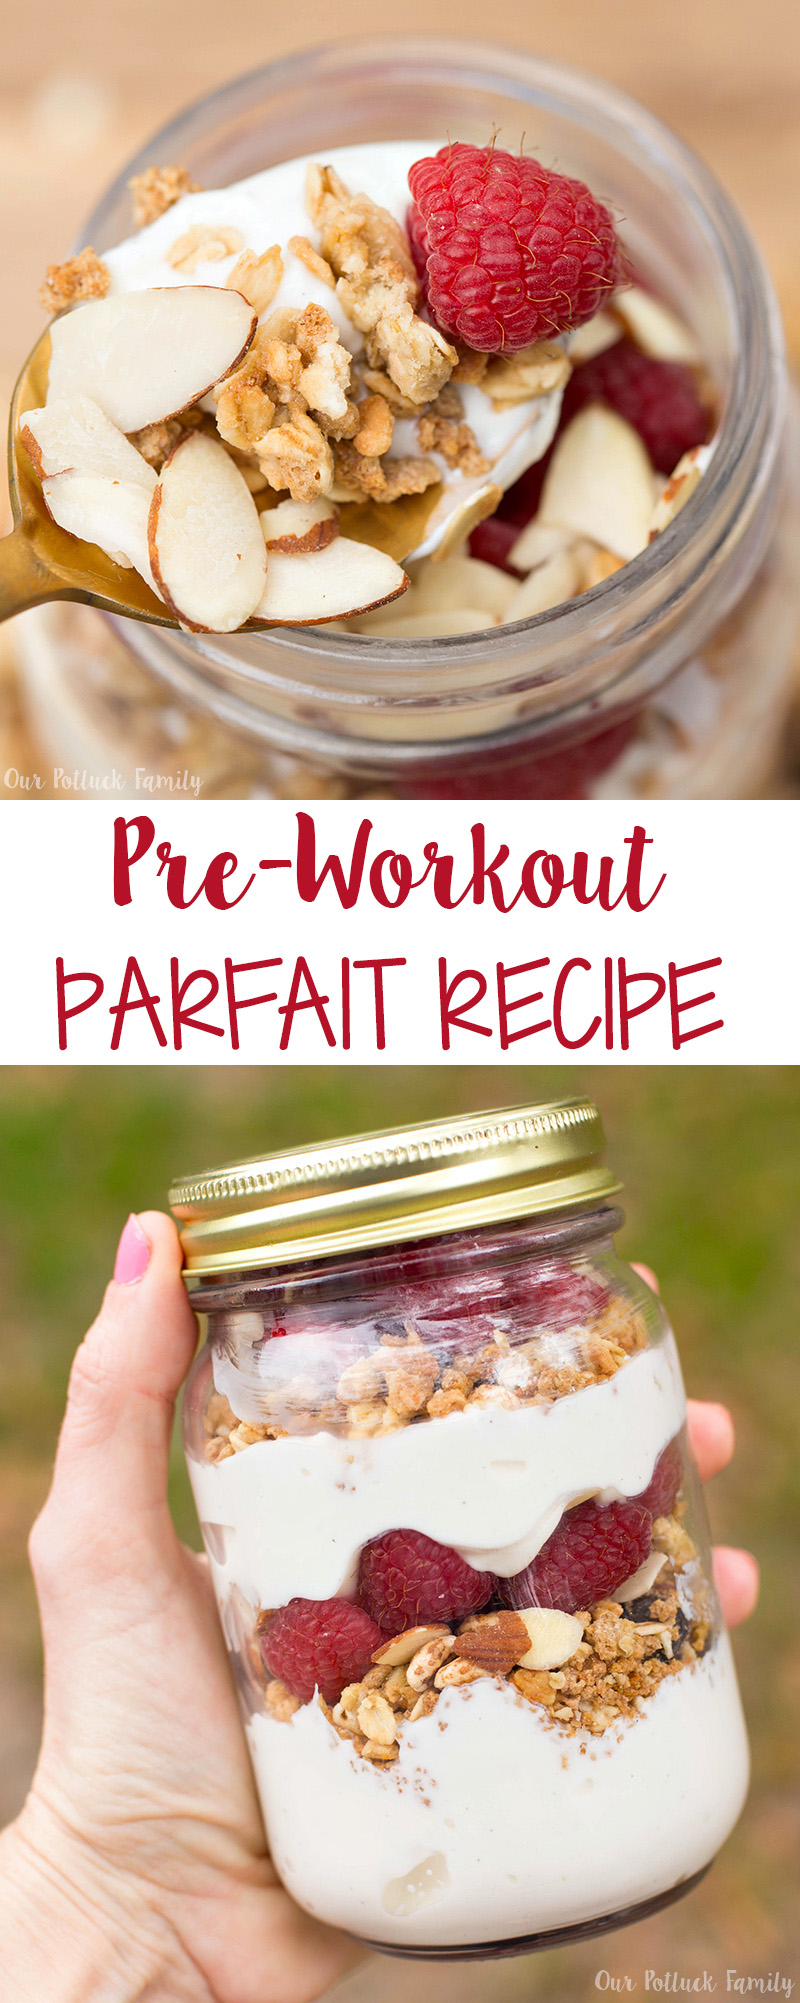 Pre-workout Parfait Recipe